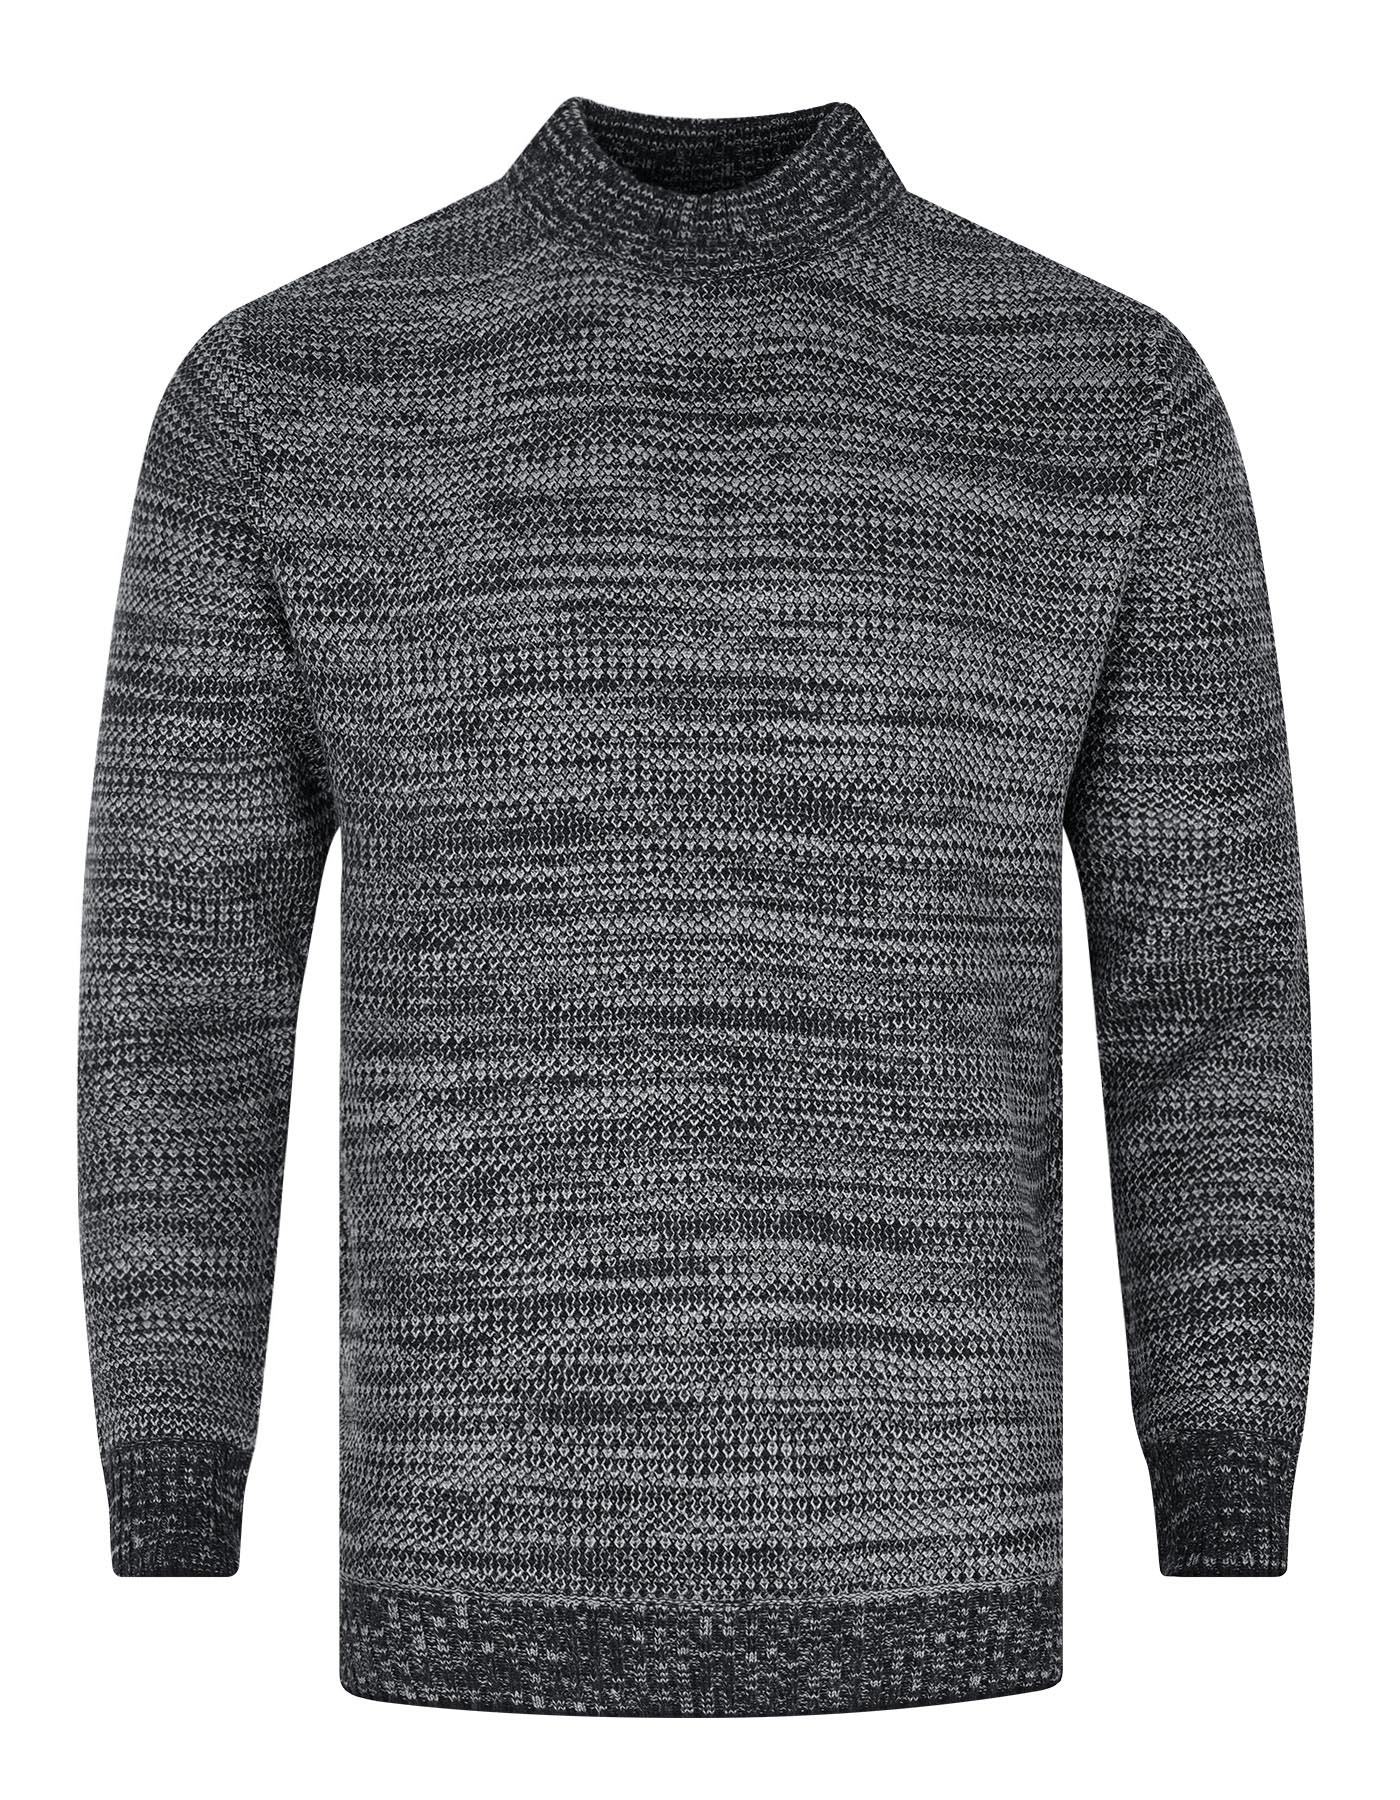 Black Mock Neck Sweater For Men